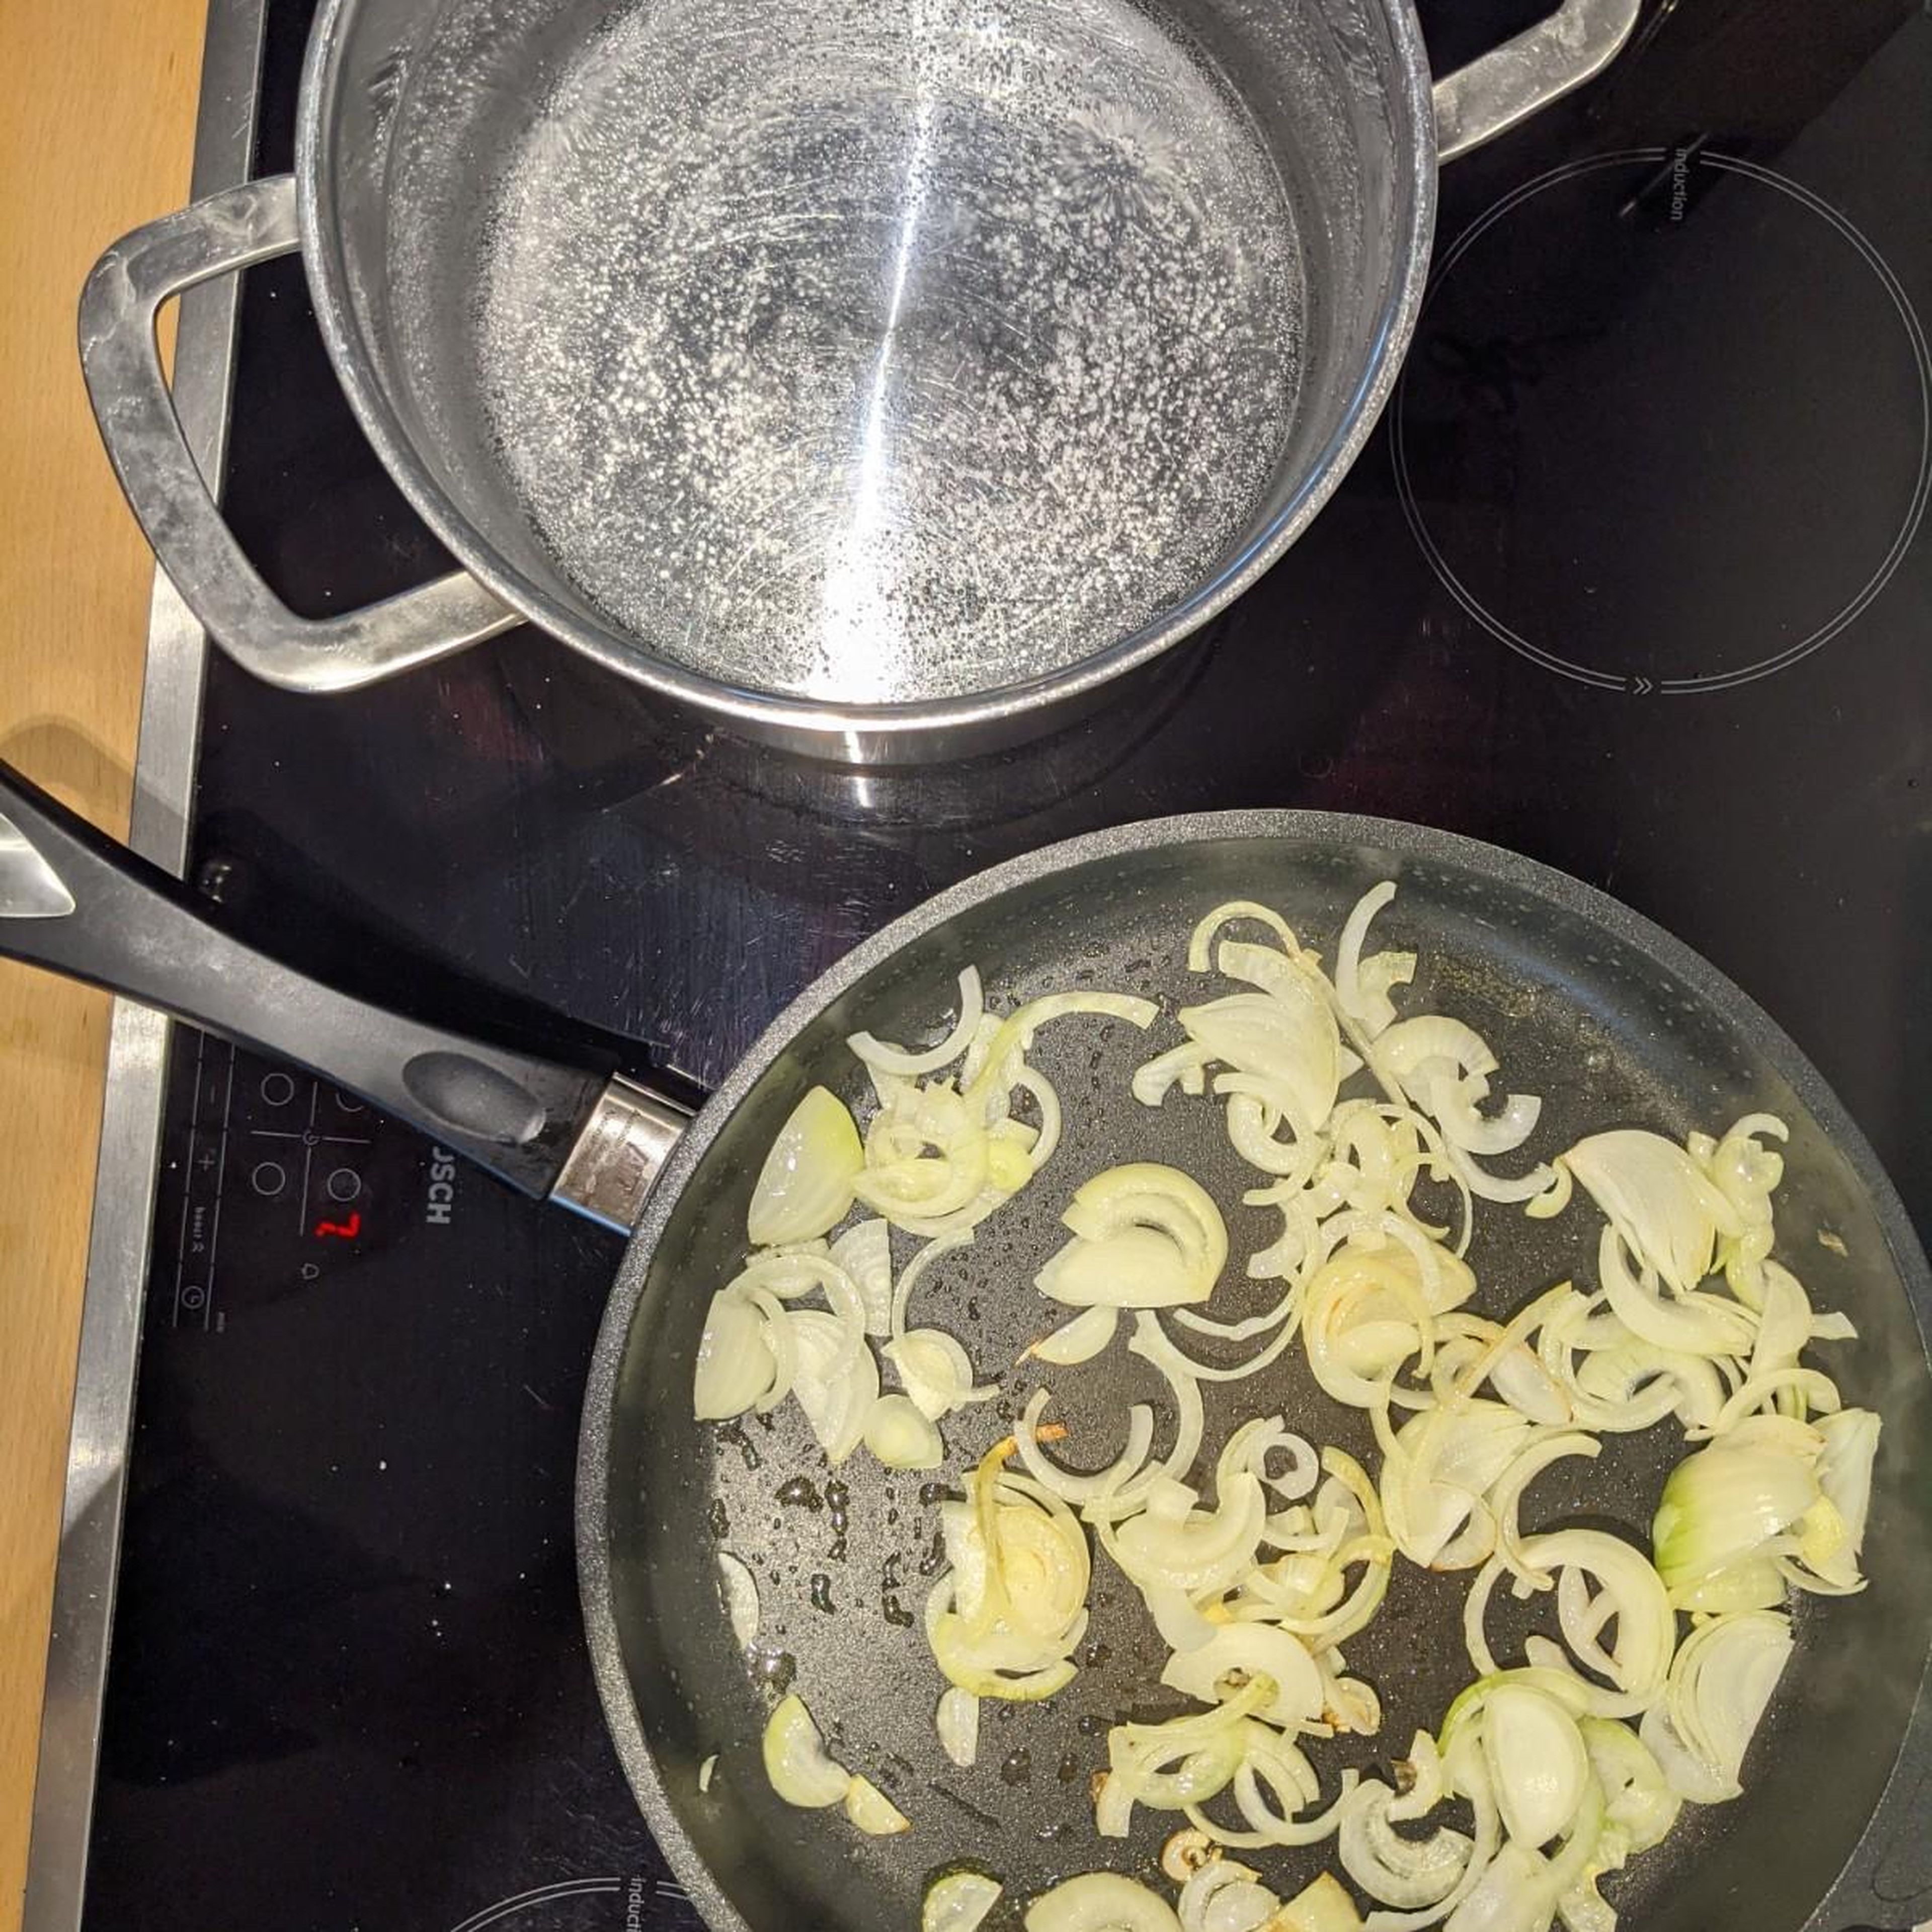 Fange nun an die Zwiebeln zu schneiden und diese dann in einer Pfanne mit etwas Öl zu braten. (Dieser Schritt ist nicht nötig, falls man keine Zwiebeln mag. Währenddessen kannst du anfangen in einem großen Topf Wasser zu kochen und 2 gehäufte TL Salz hinzugeben.